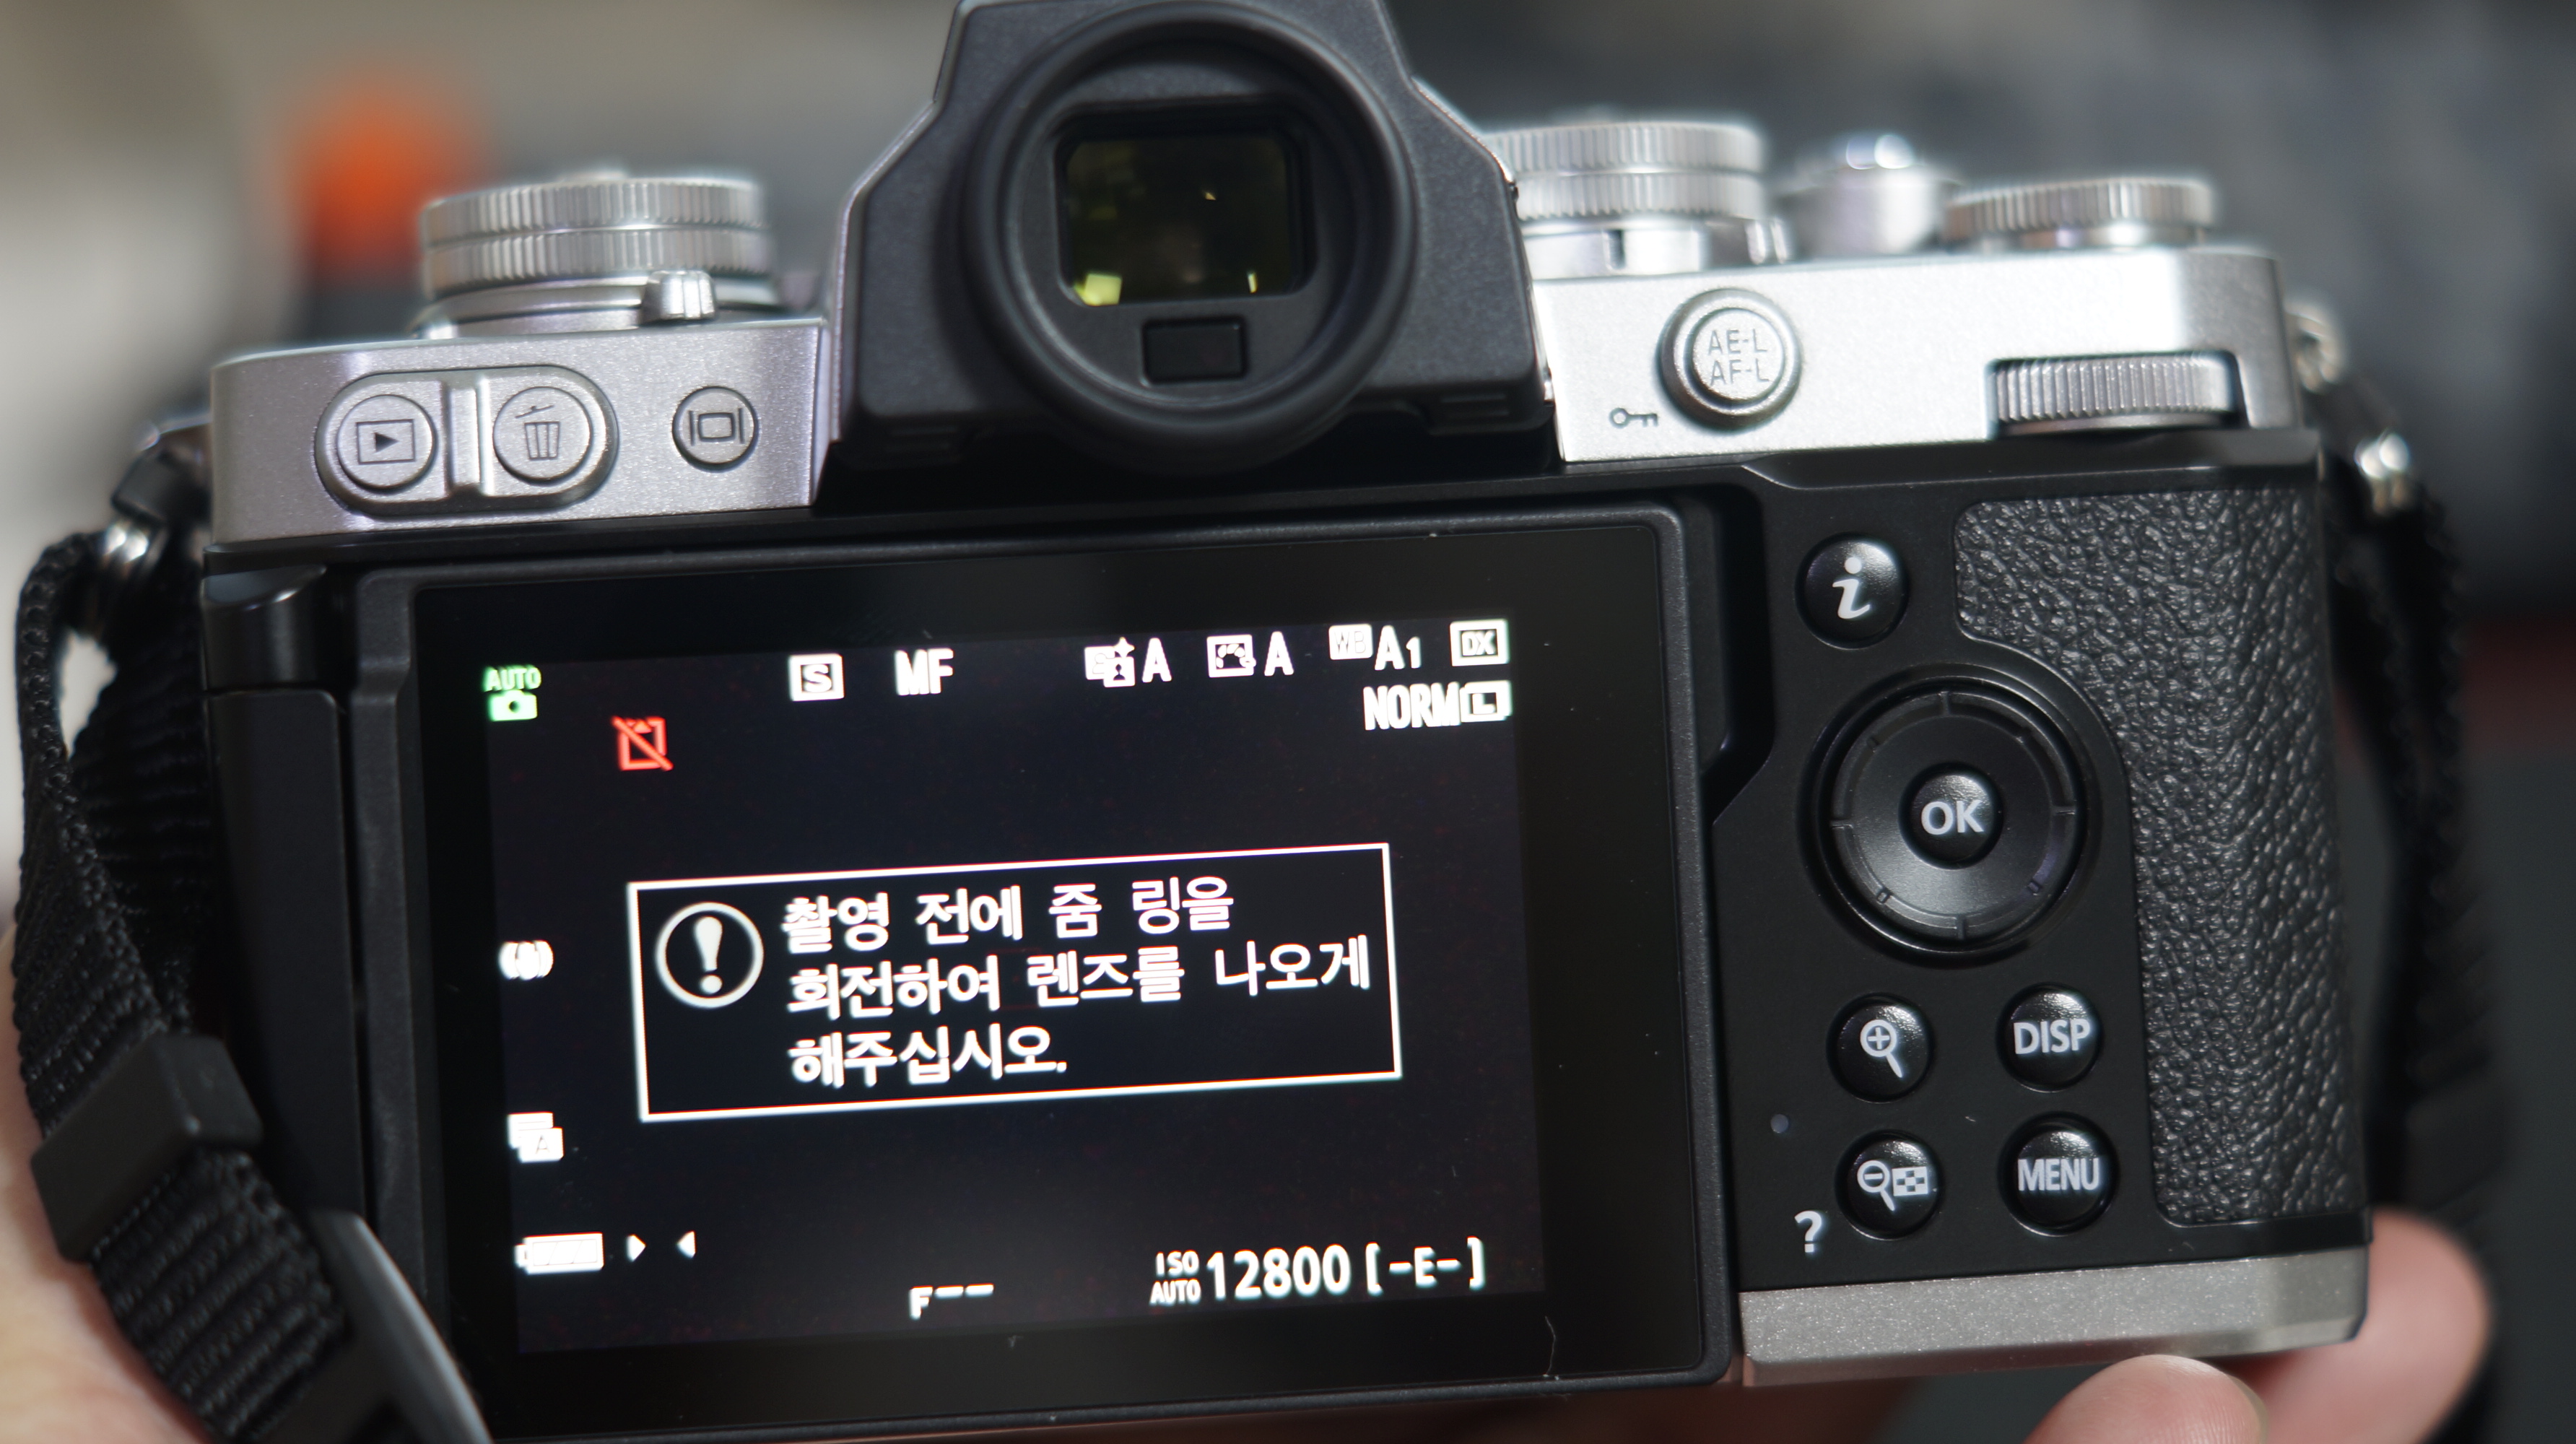 니콘 Zfc 레트로 디자인의 미러리스 디지털카메라 개봉기 사진14